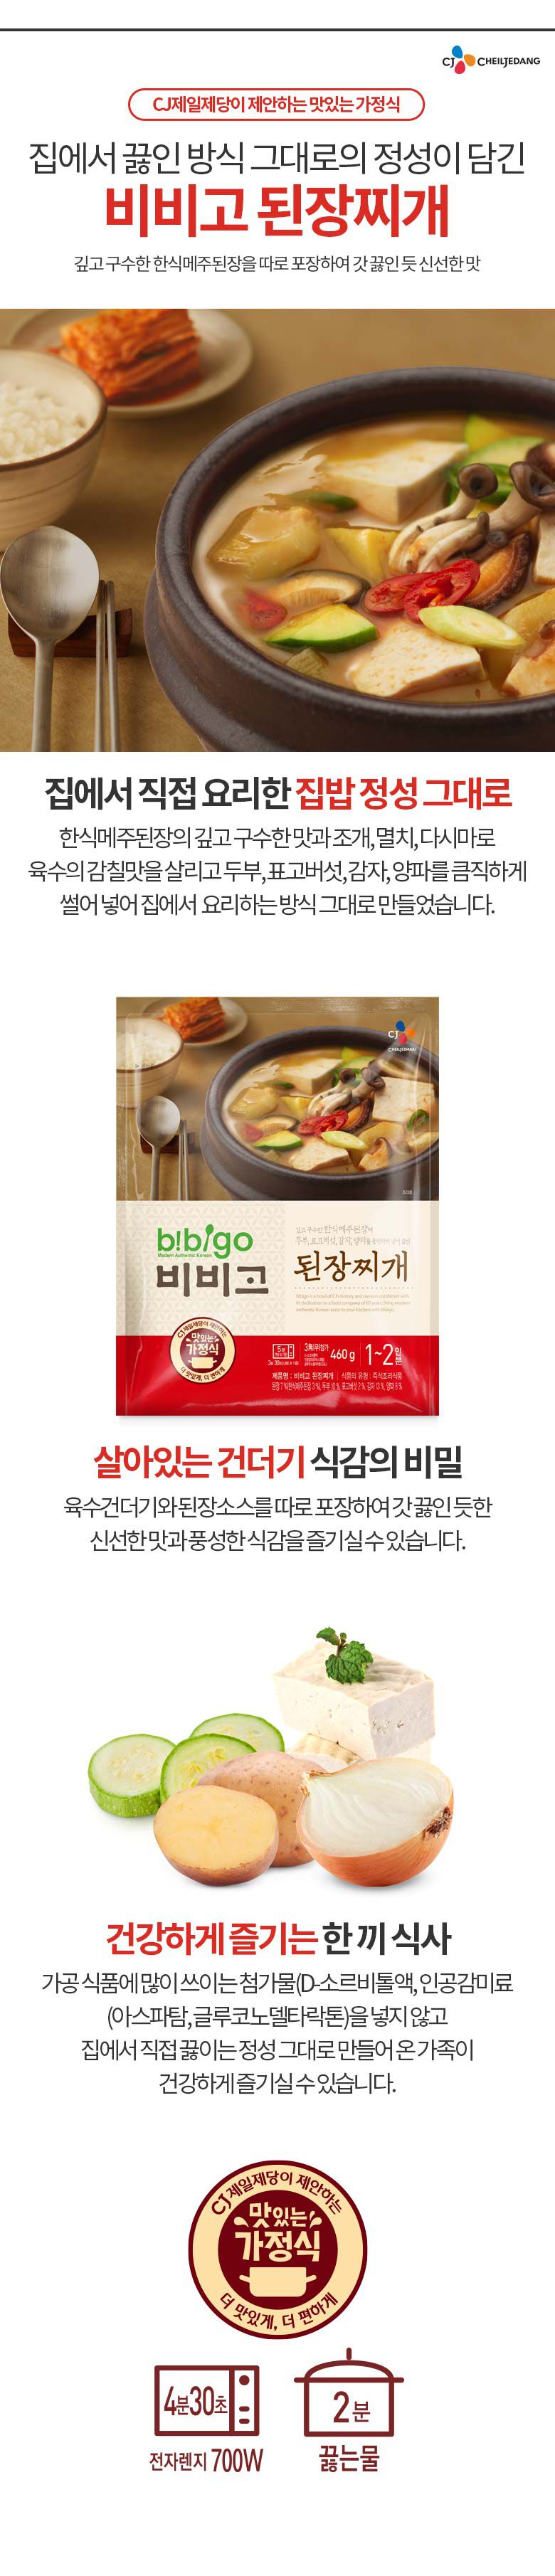 韓國食品-[CJ] 비비고 된장찌개 460g (no.7)